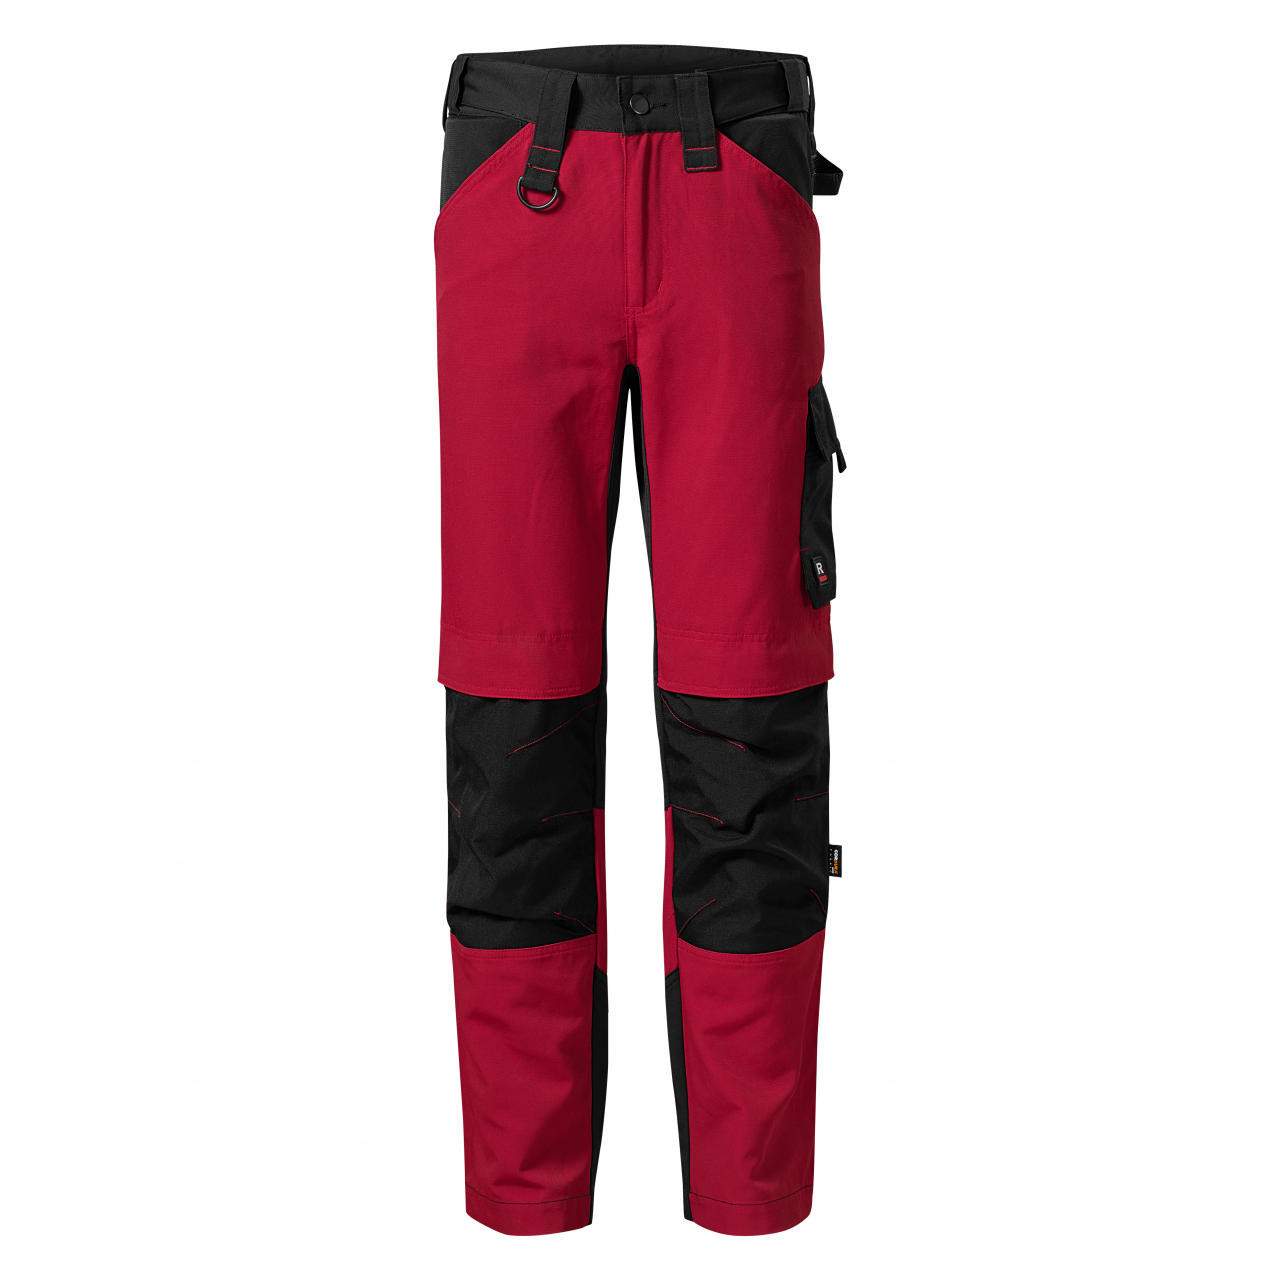 Pracovní kalhoty pánské Rimeck Vertex - černé-červené, 44